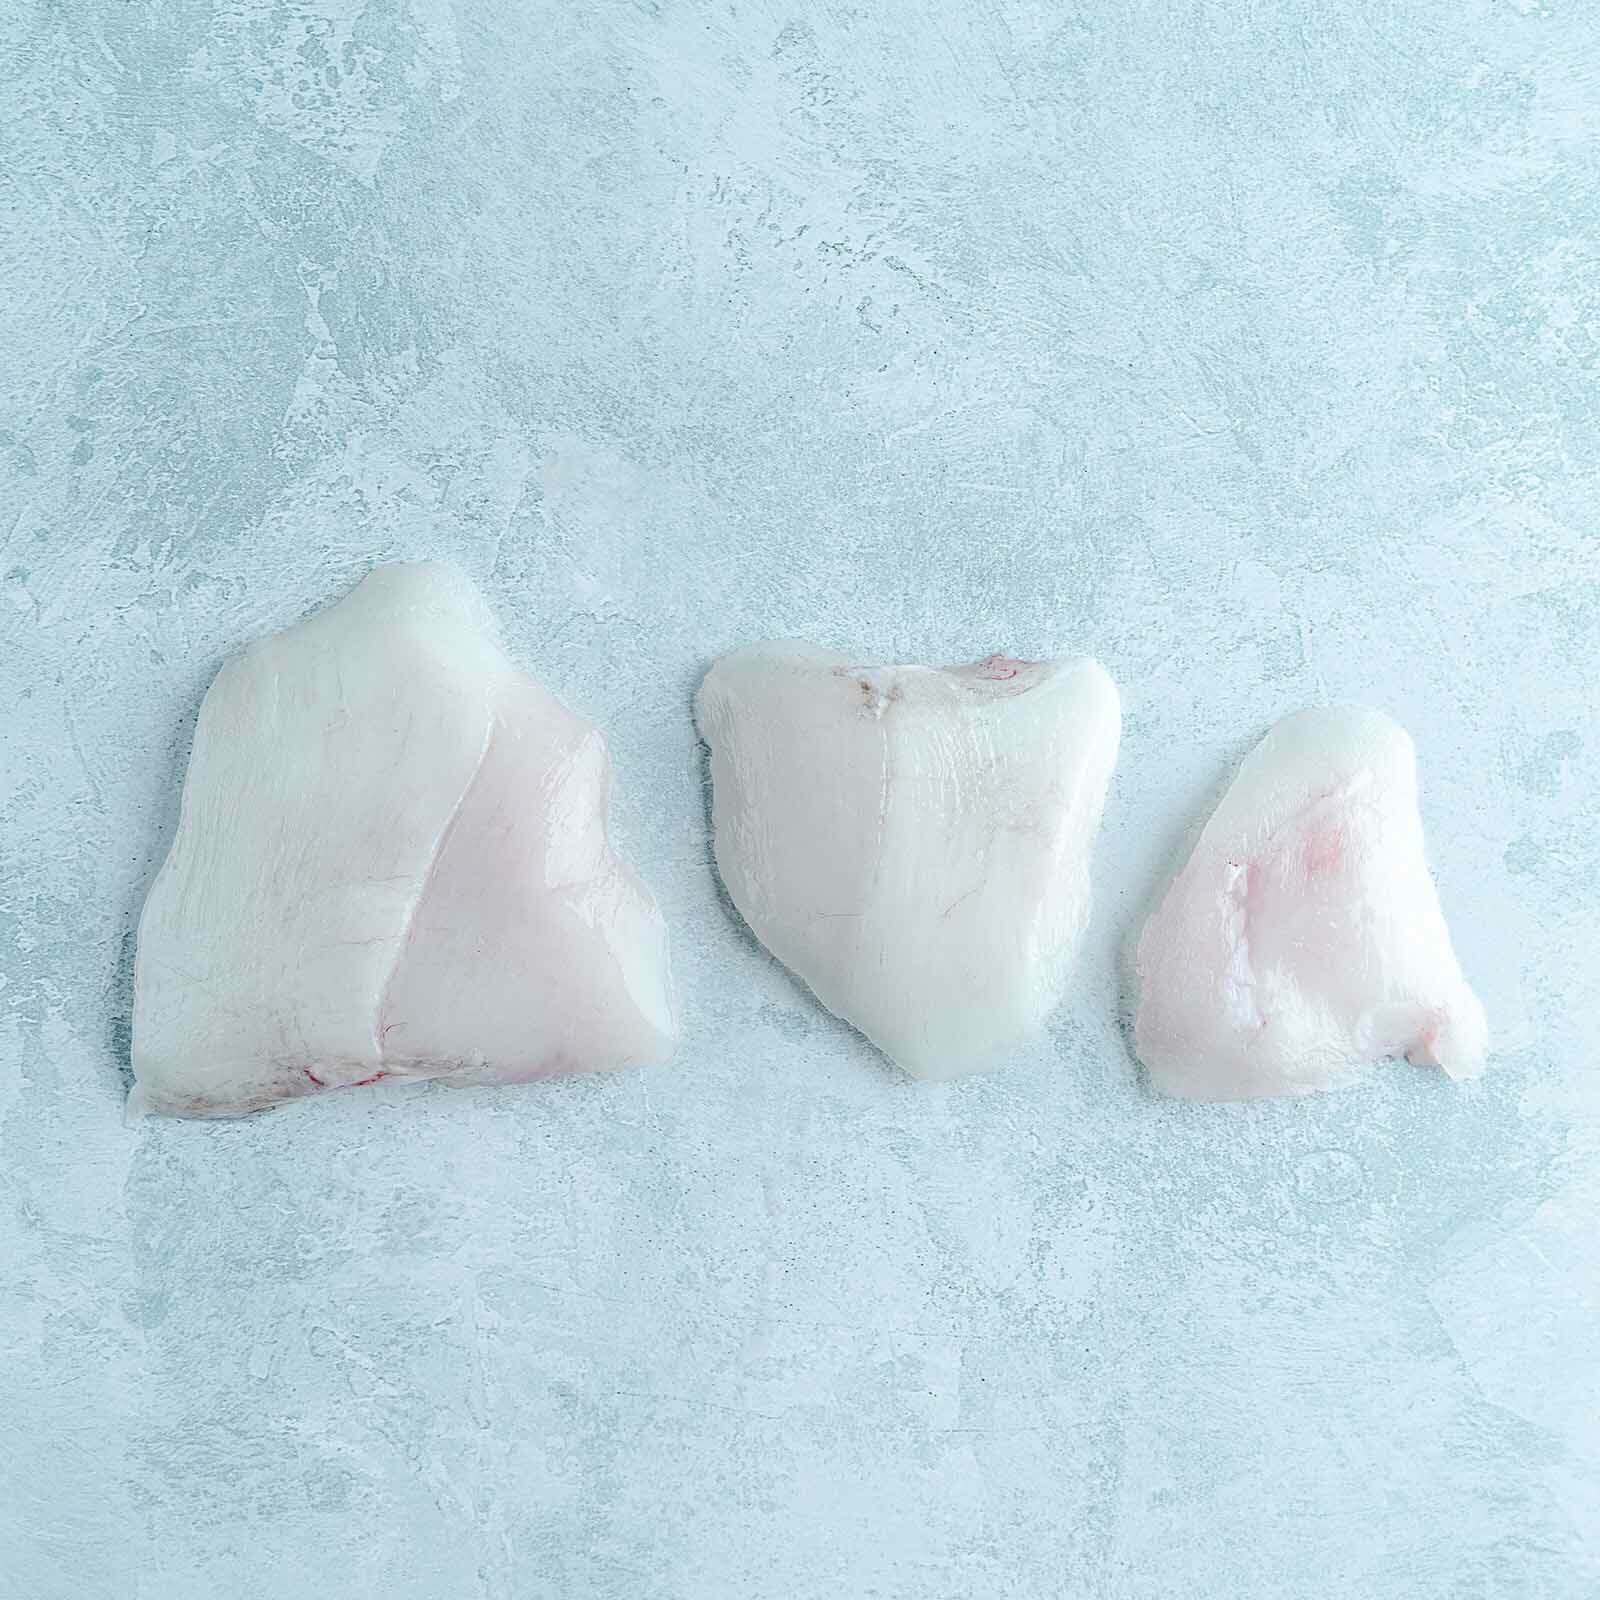 Skinless monkfish cheeks